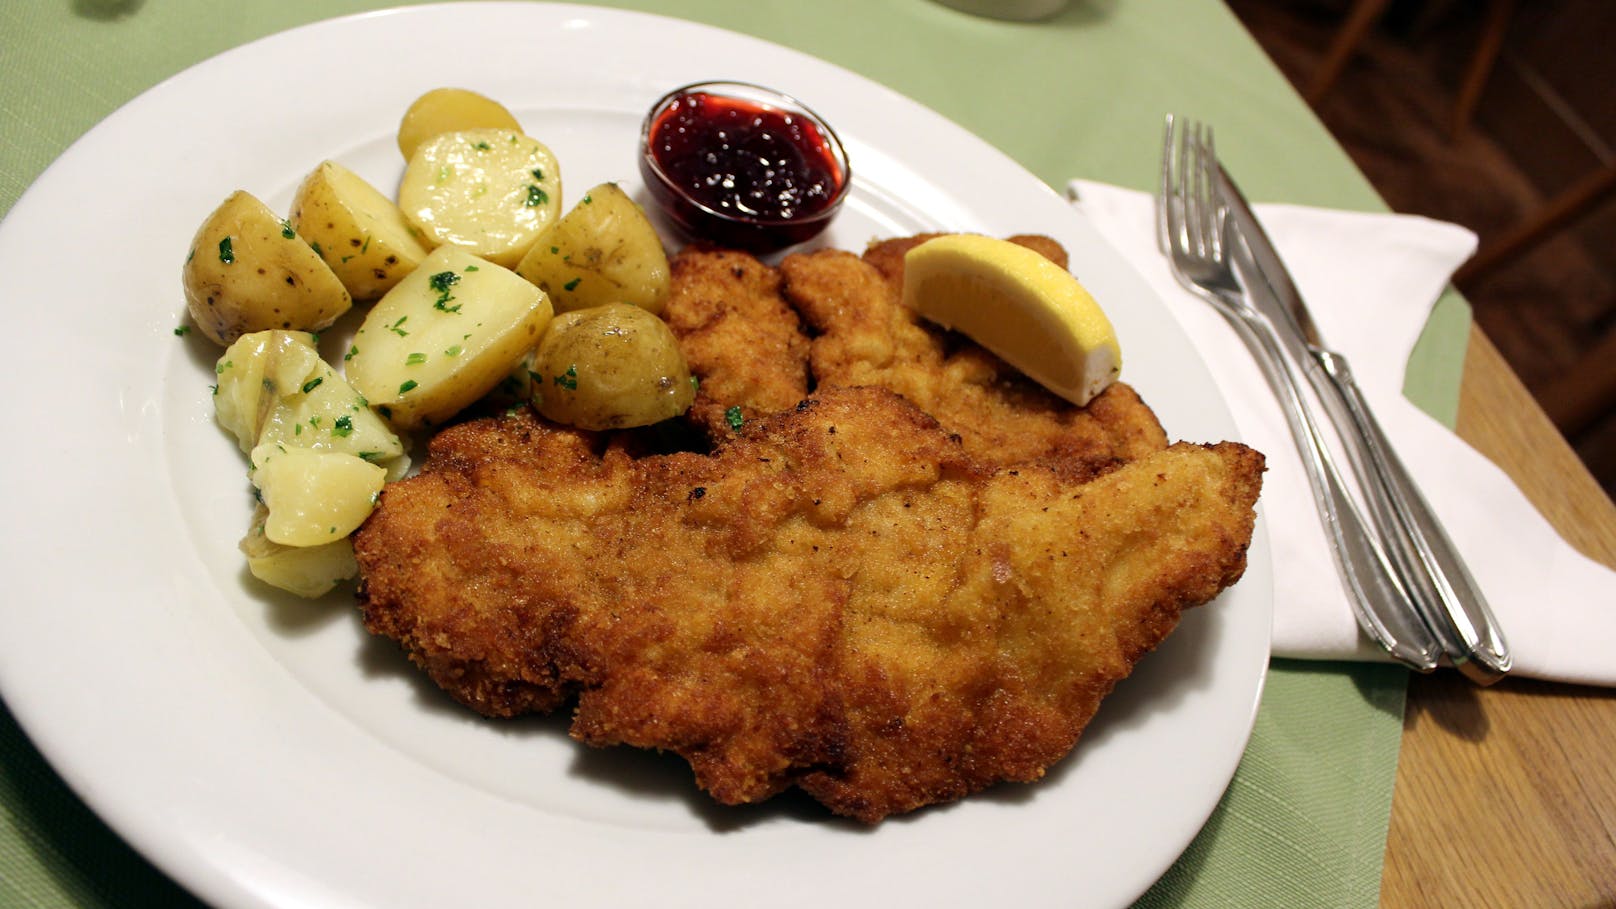 Die Organisation Vier Pfoten kritisiert mangelnde Angabe zur Herkunft von tierischen Lebensmitteln in Wiener Restaurants.